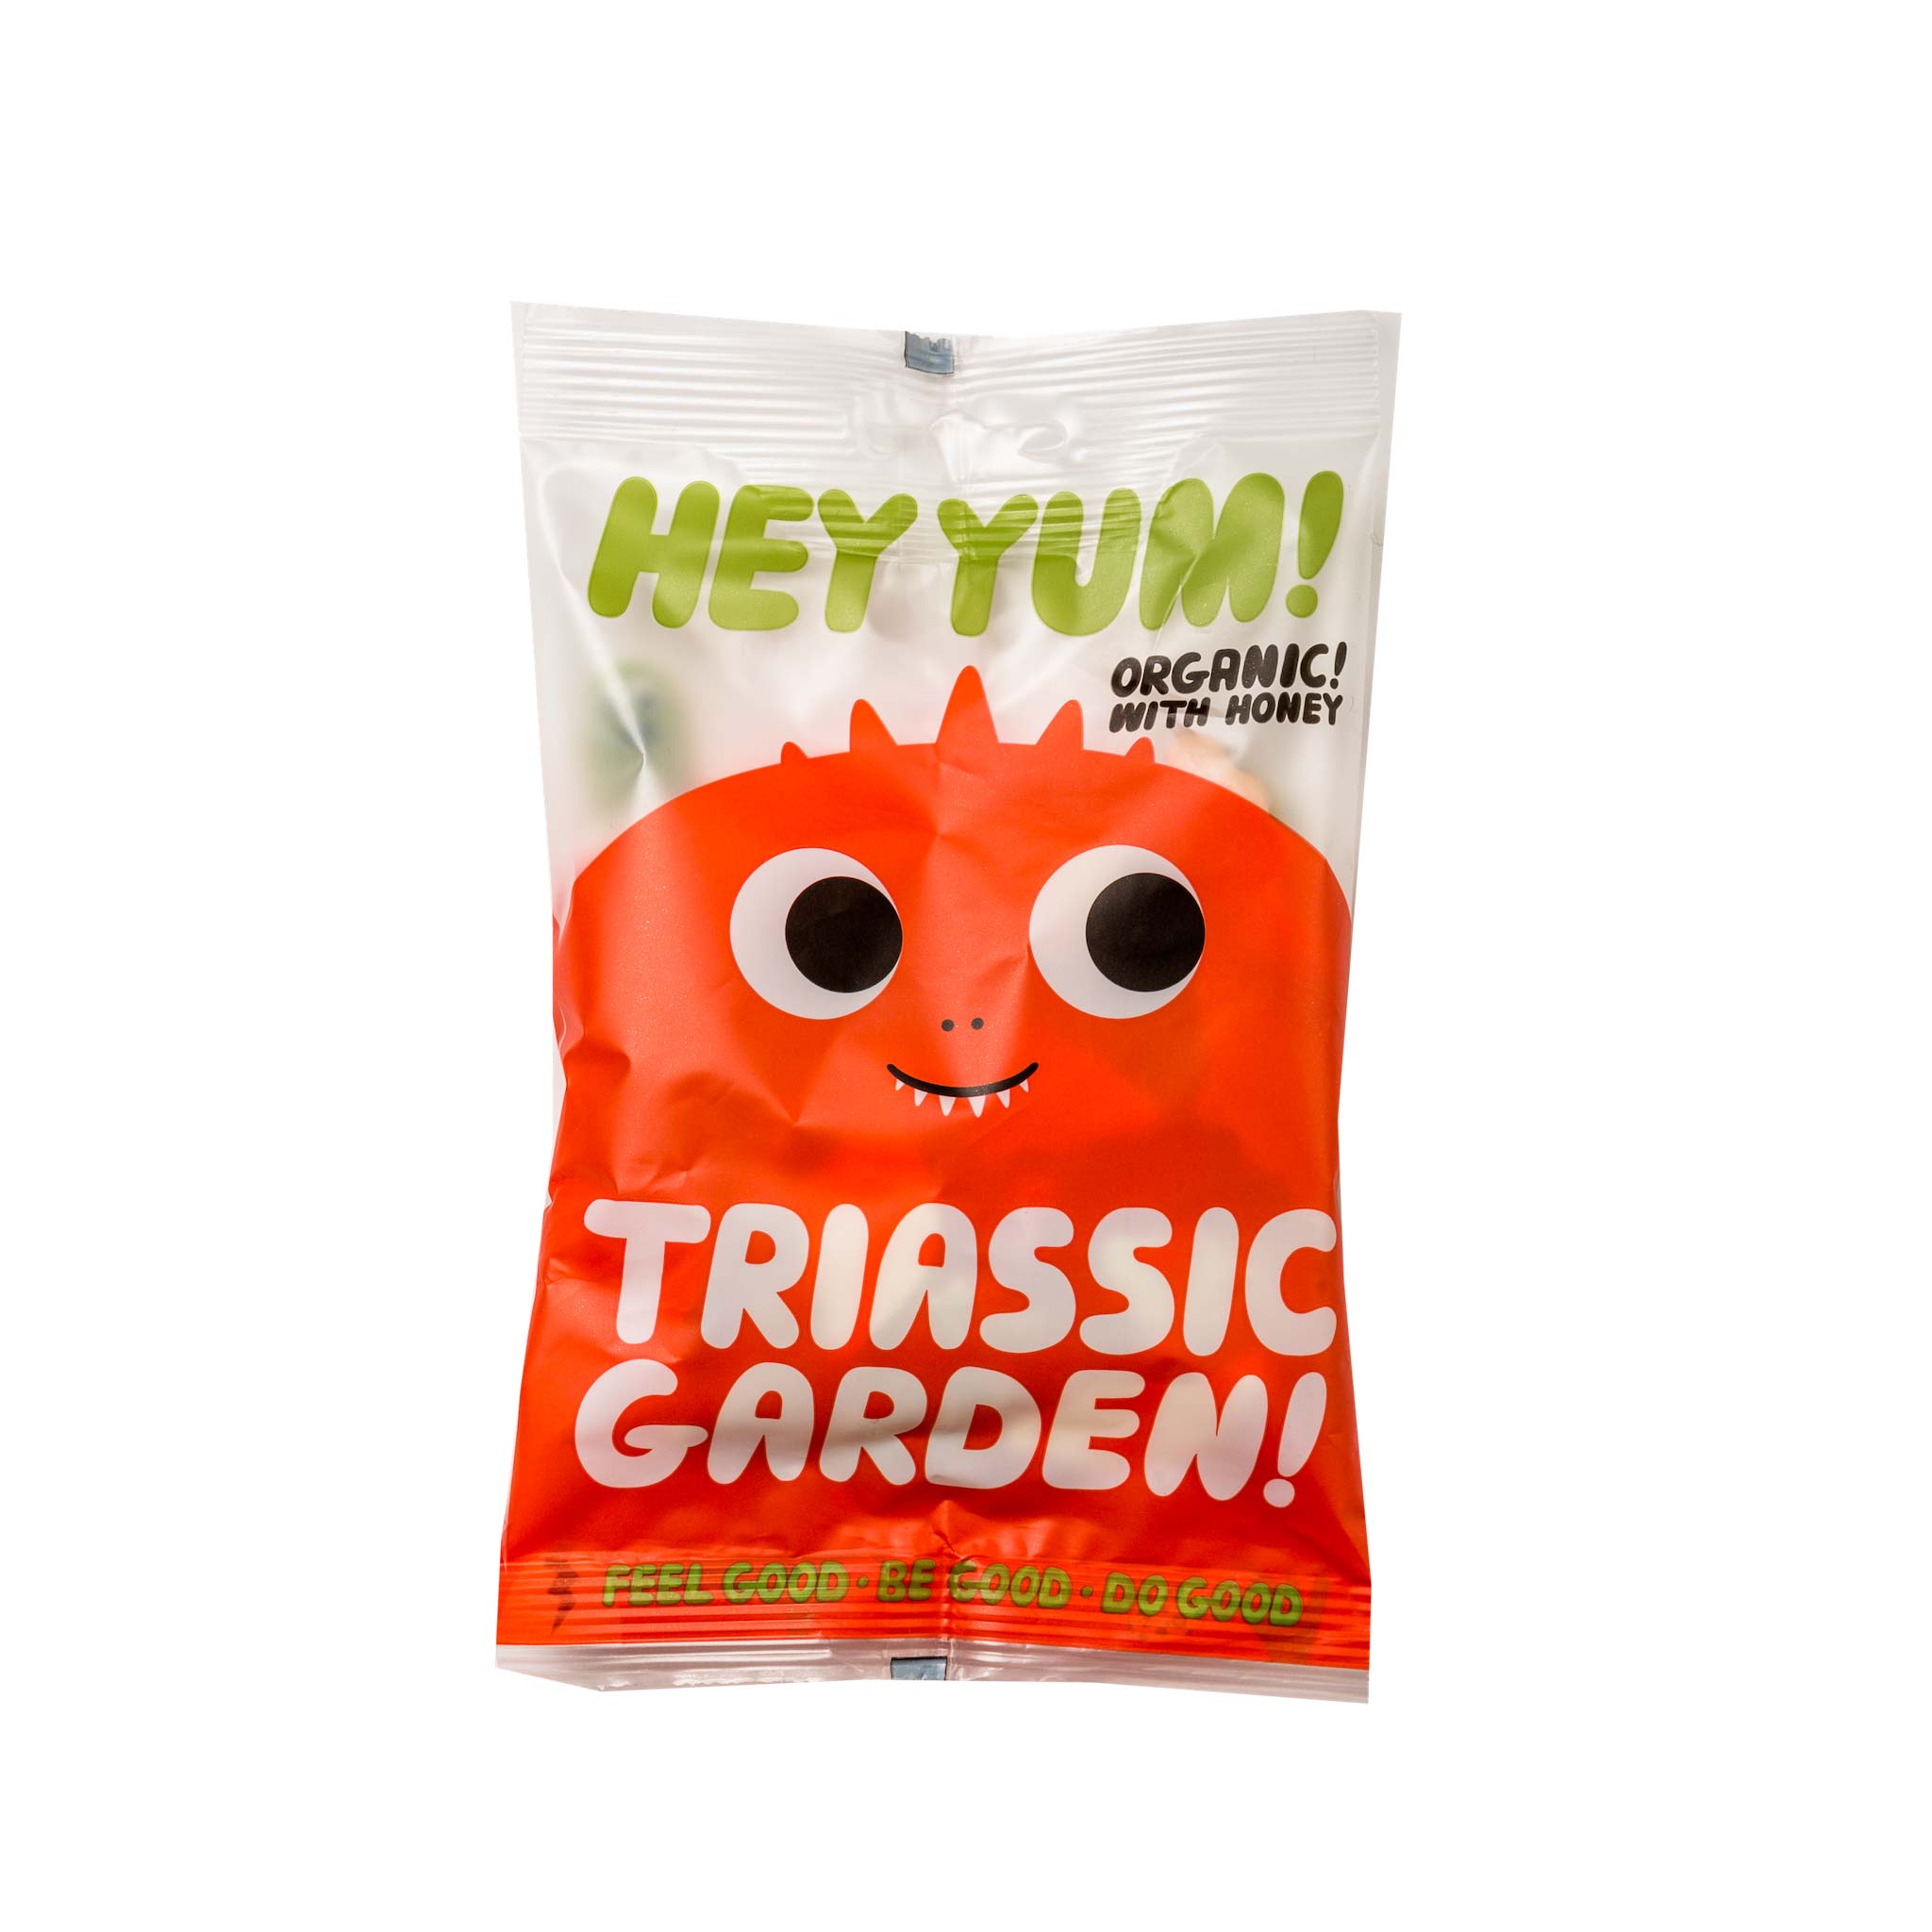 Triasic Garden jelly beans